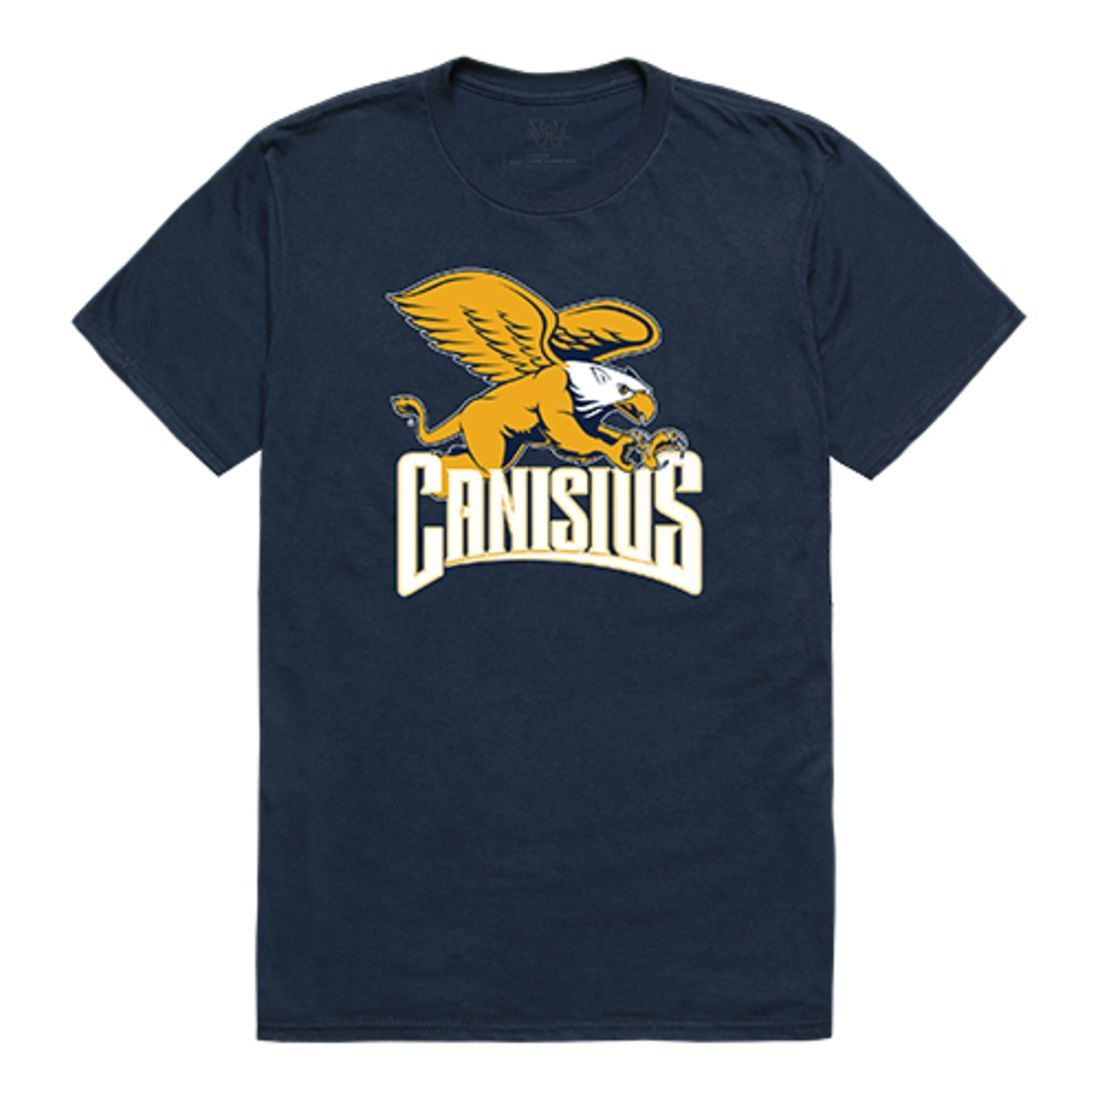 Canisius College Golden Griffins Freshman Tee T-Shirt Navy-Campus-Wardrobe